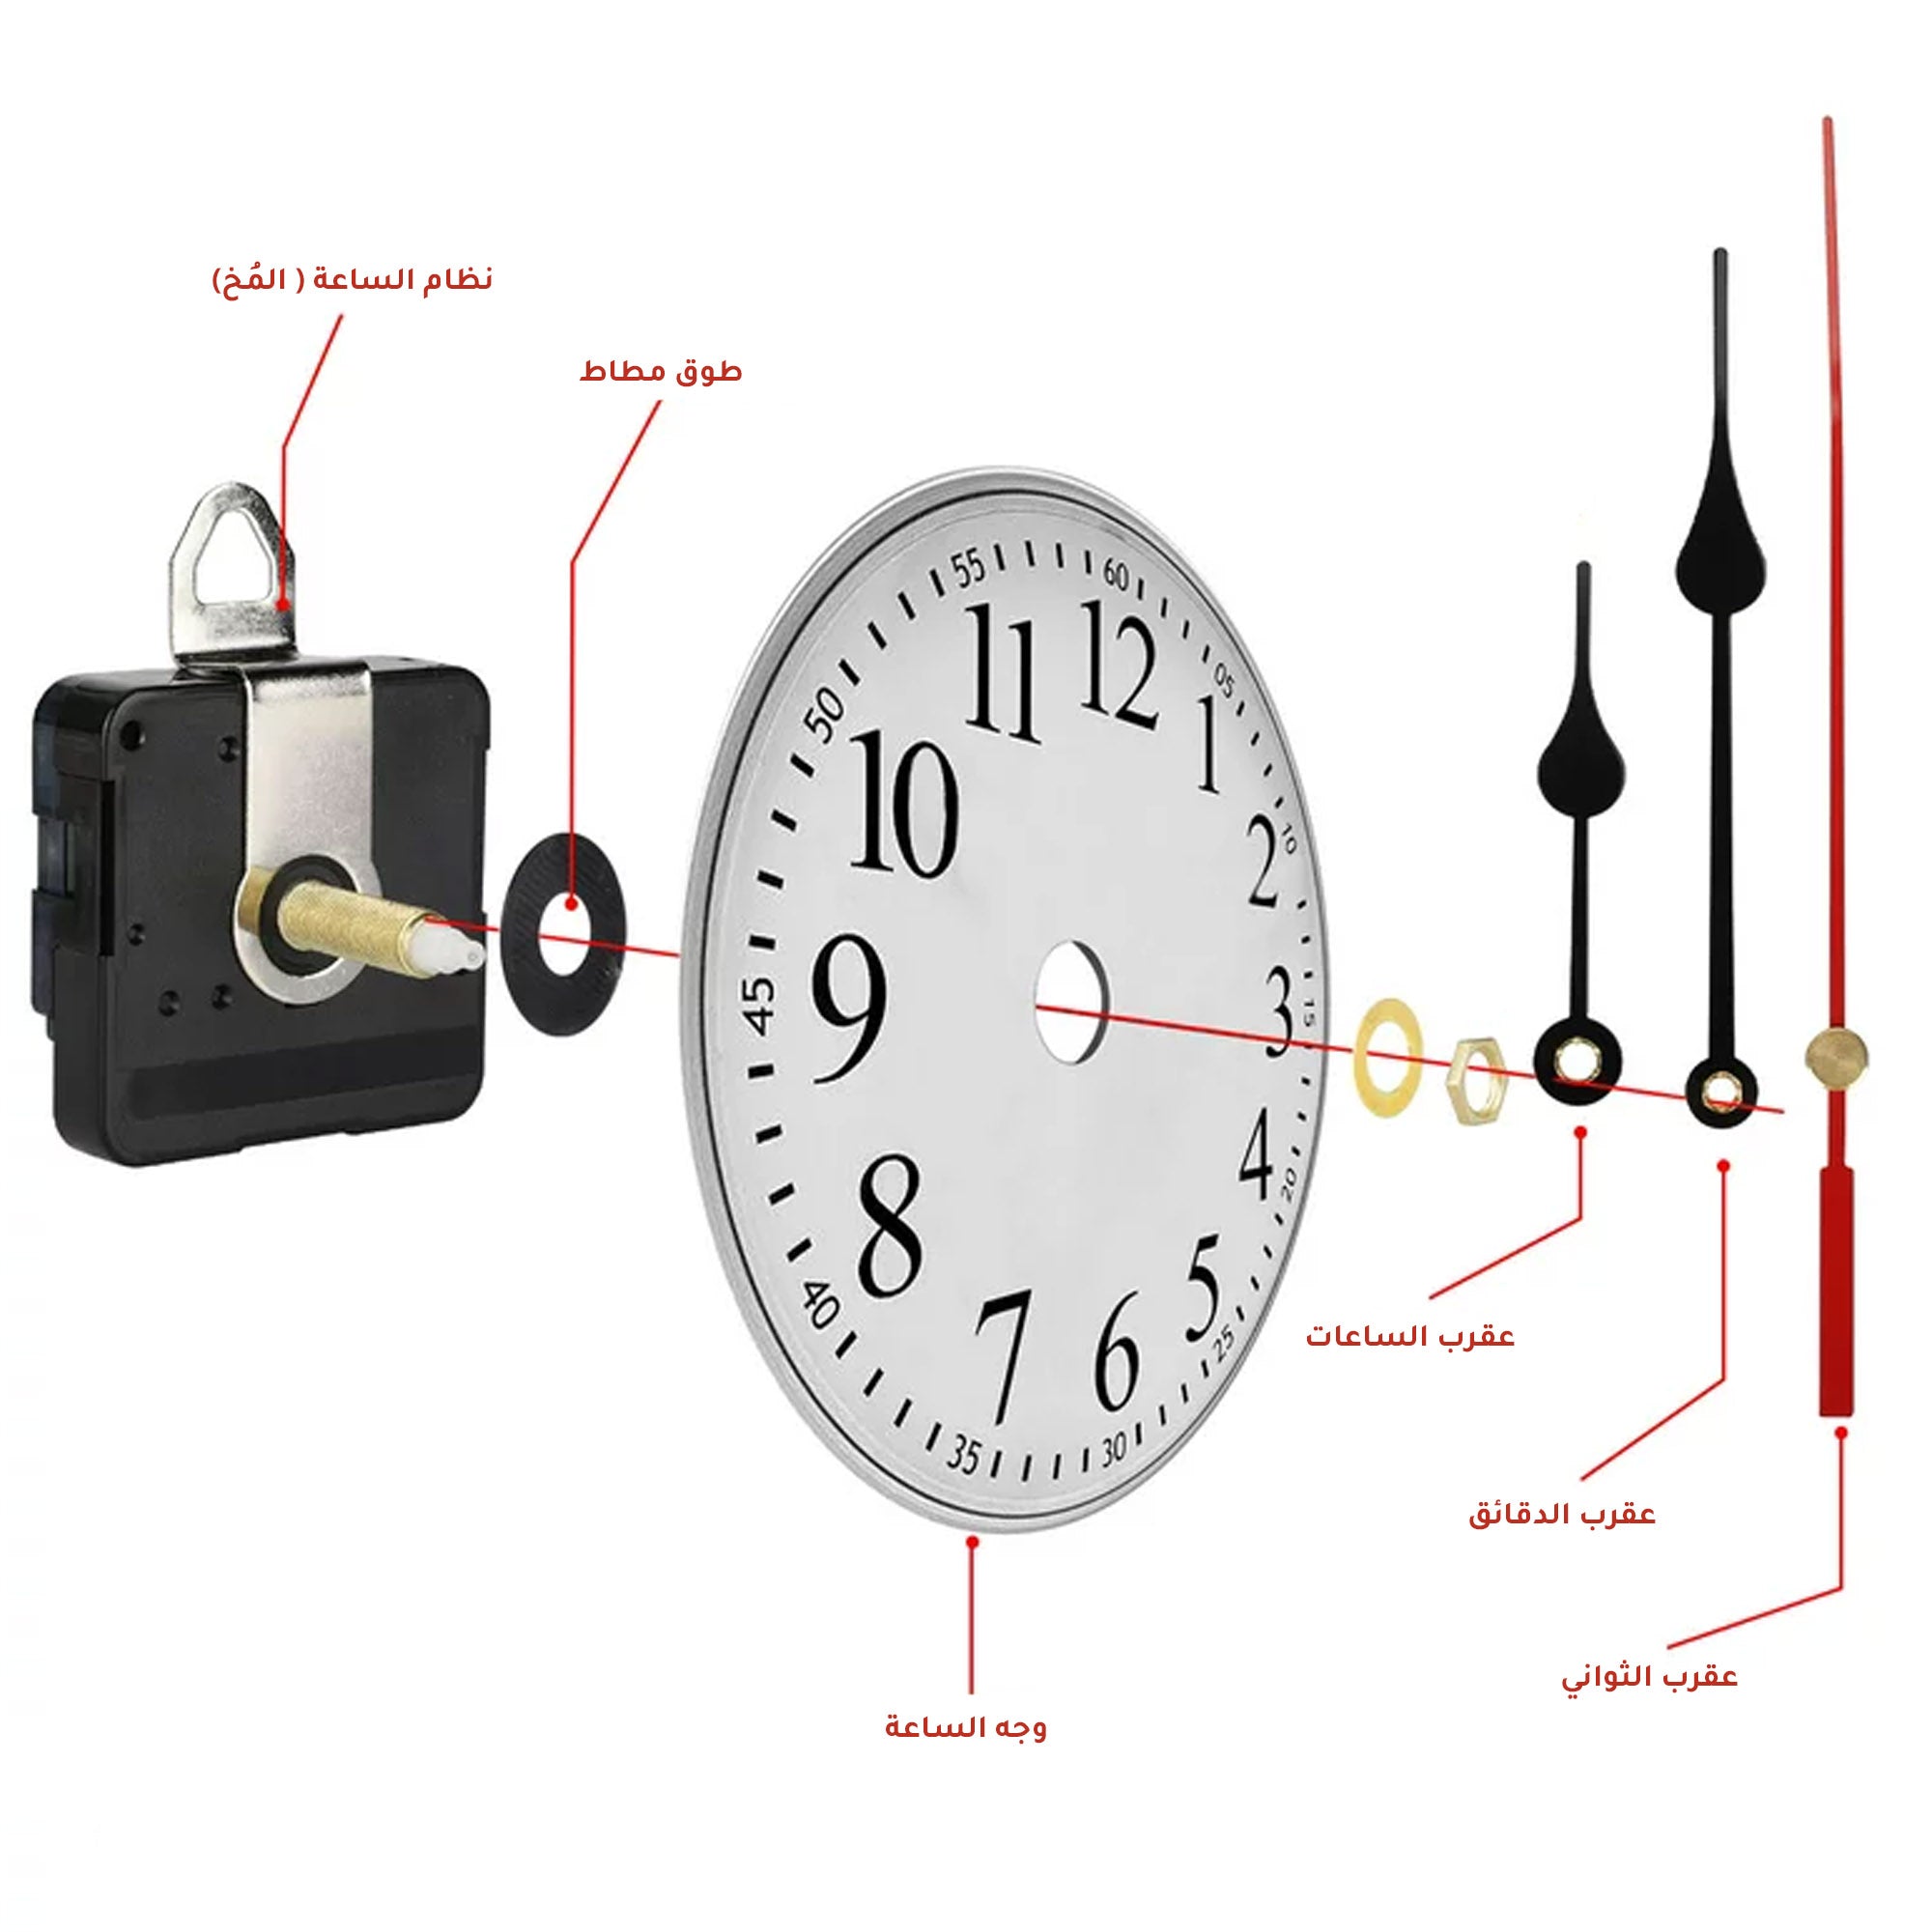 Woodberg - باكيج آلية الساعة أصلي (مُحرك الساعة + عقارب الساعة) شكل مزخرف لساعات حجم 30-45 سم 